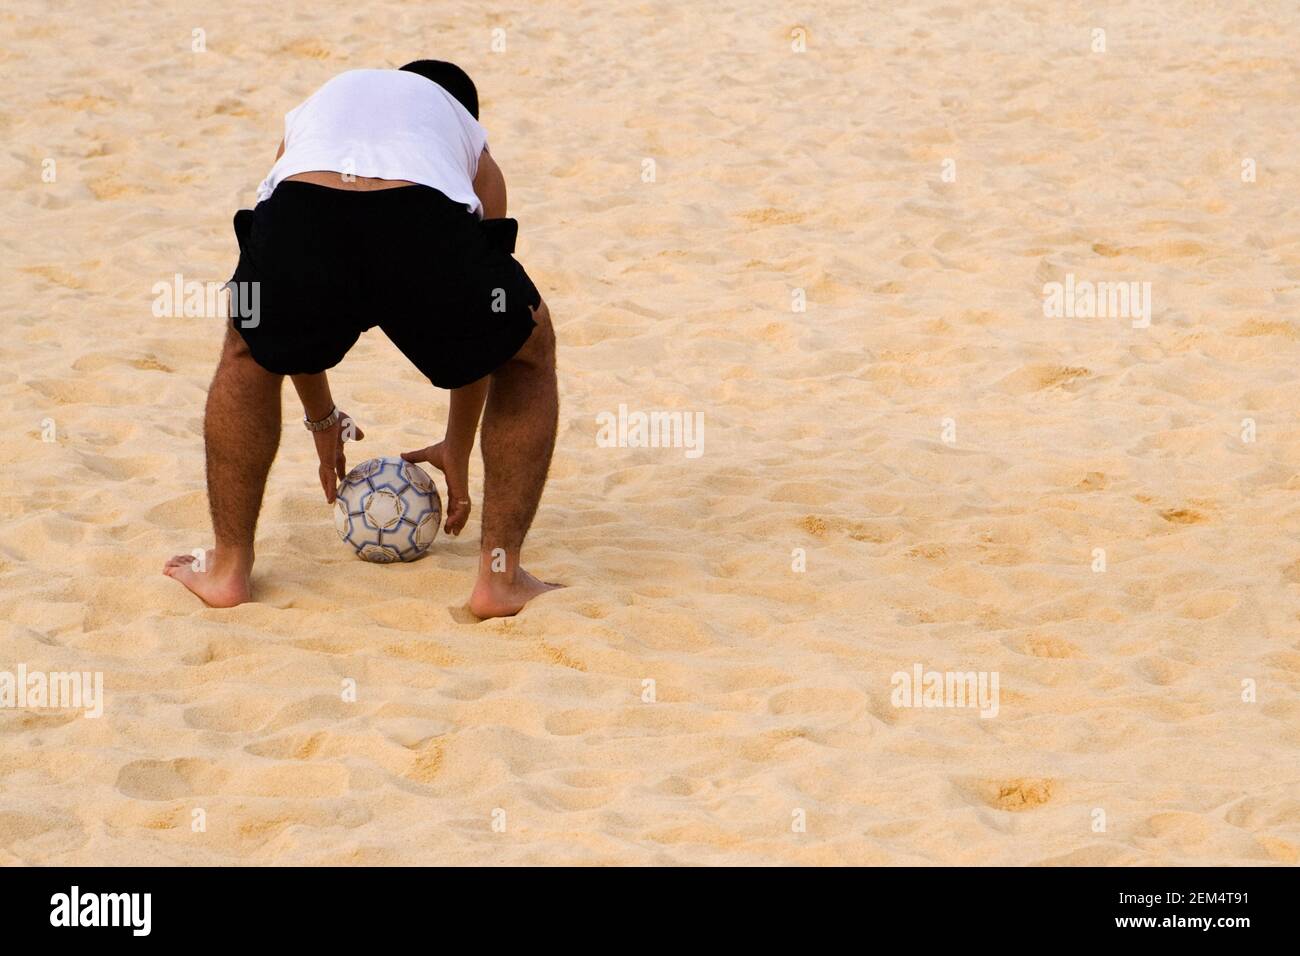 Vue arrière d'un homme prenant un ballon de plage Banque D'Images